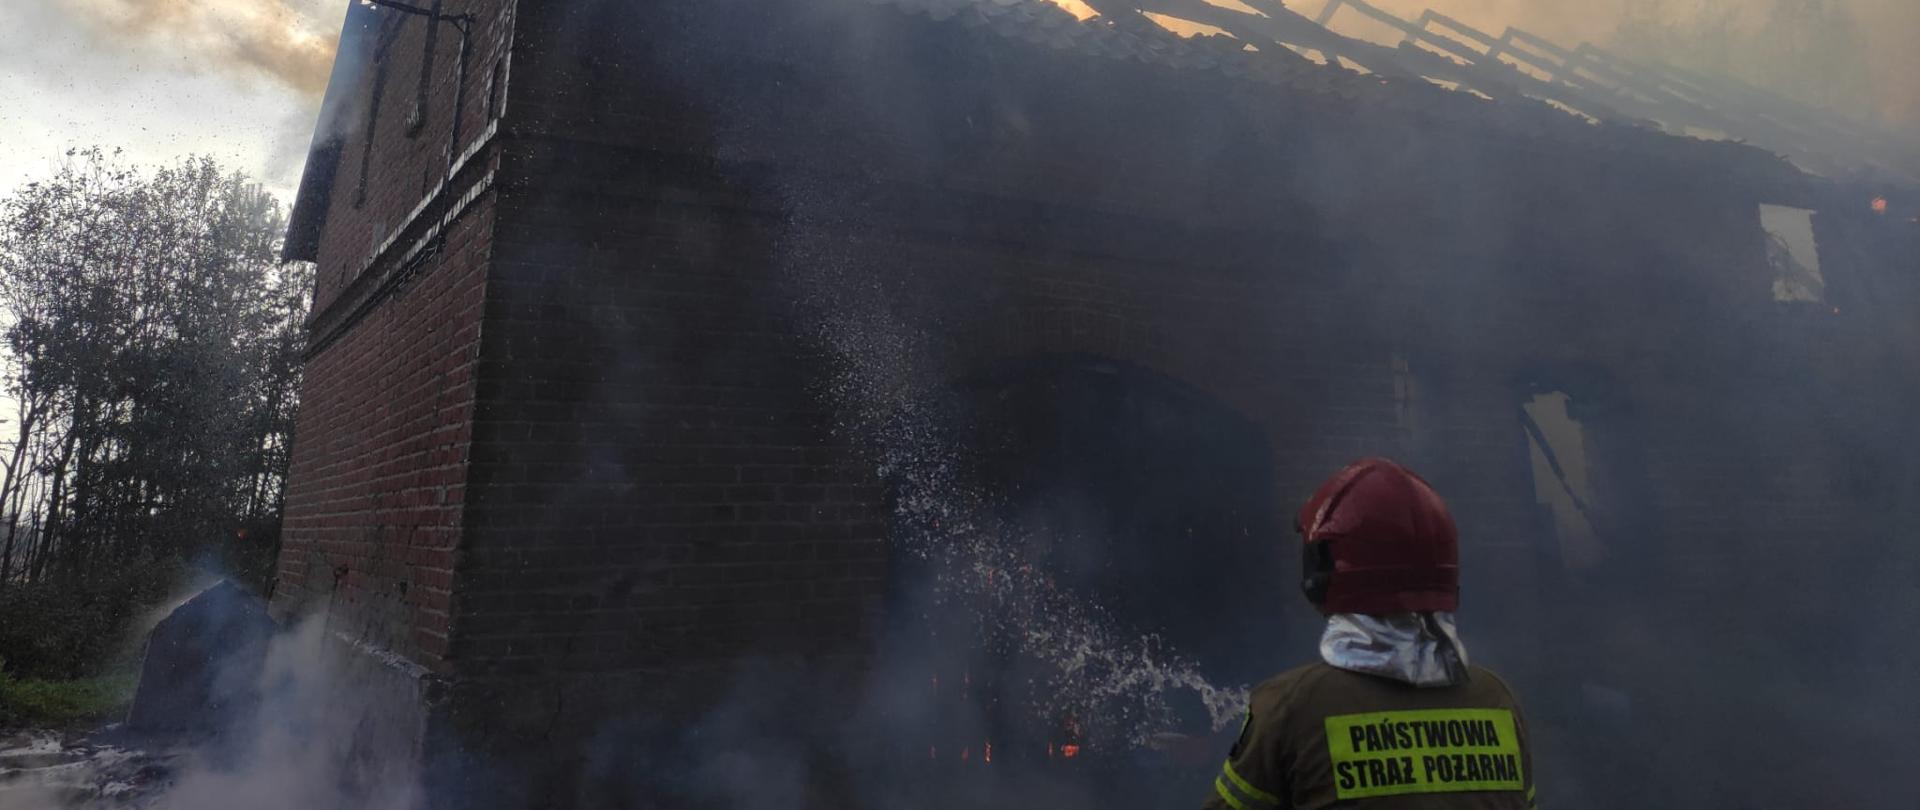 Zdjęcie przedstawia strażaka gaszącego zagrożony obiekt